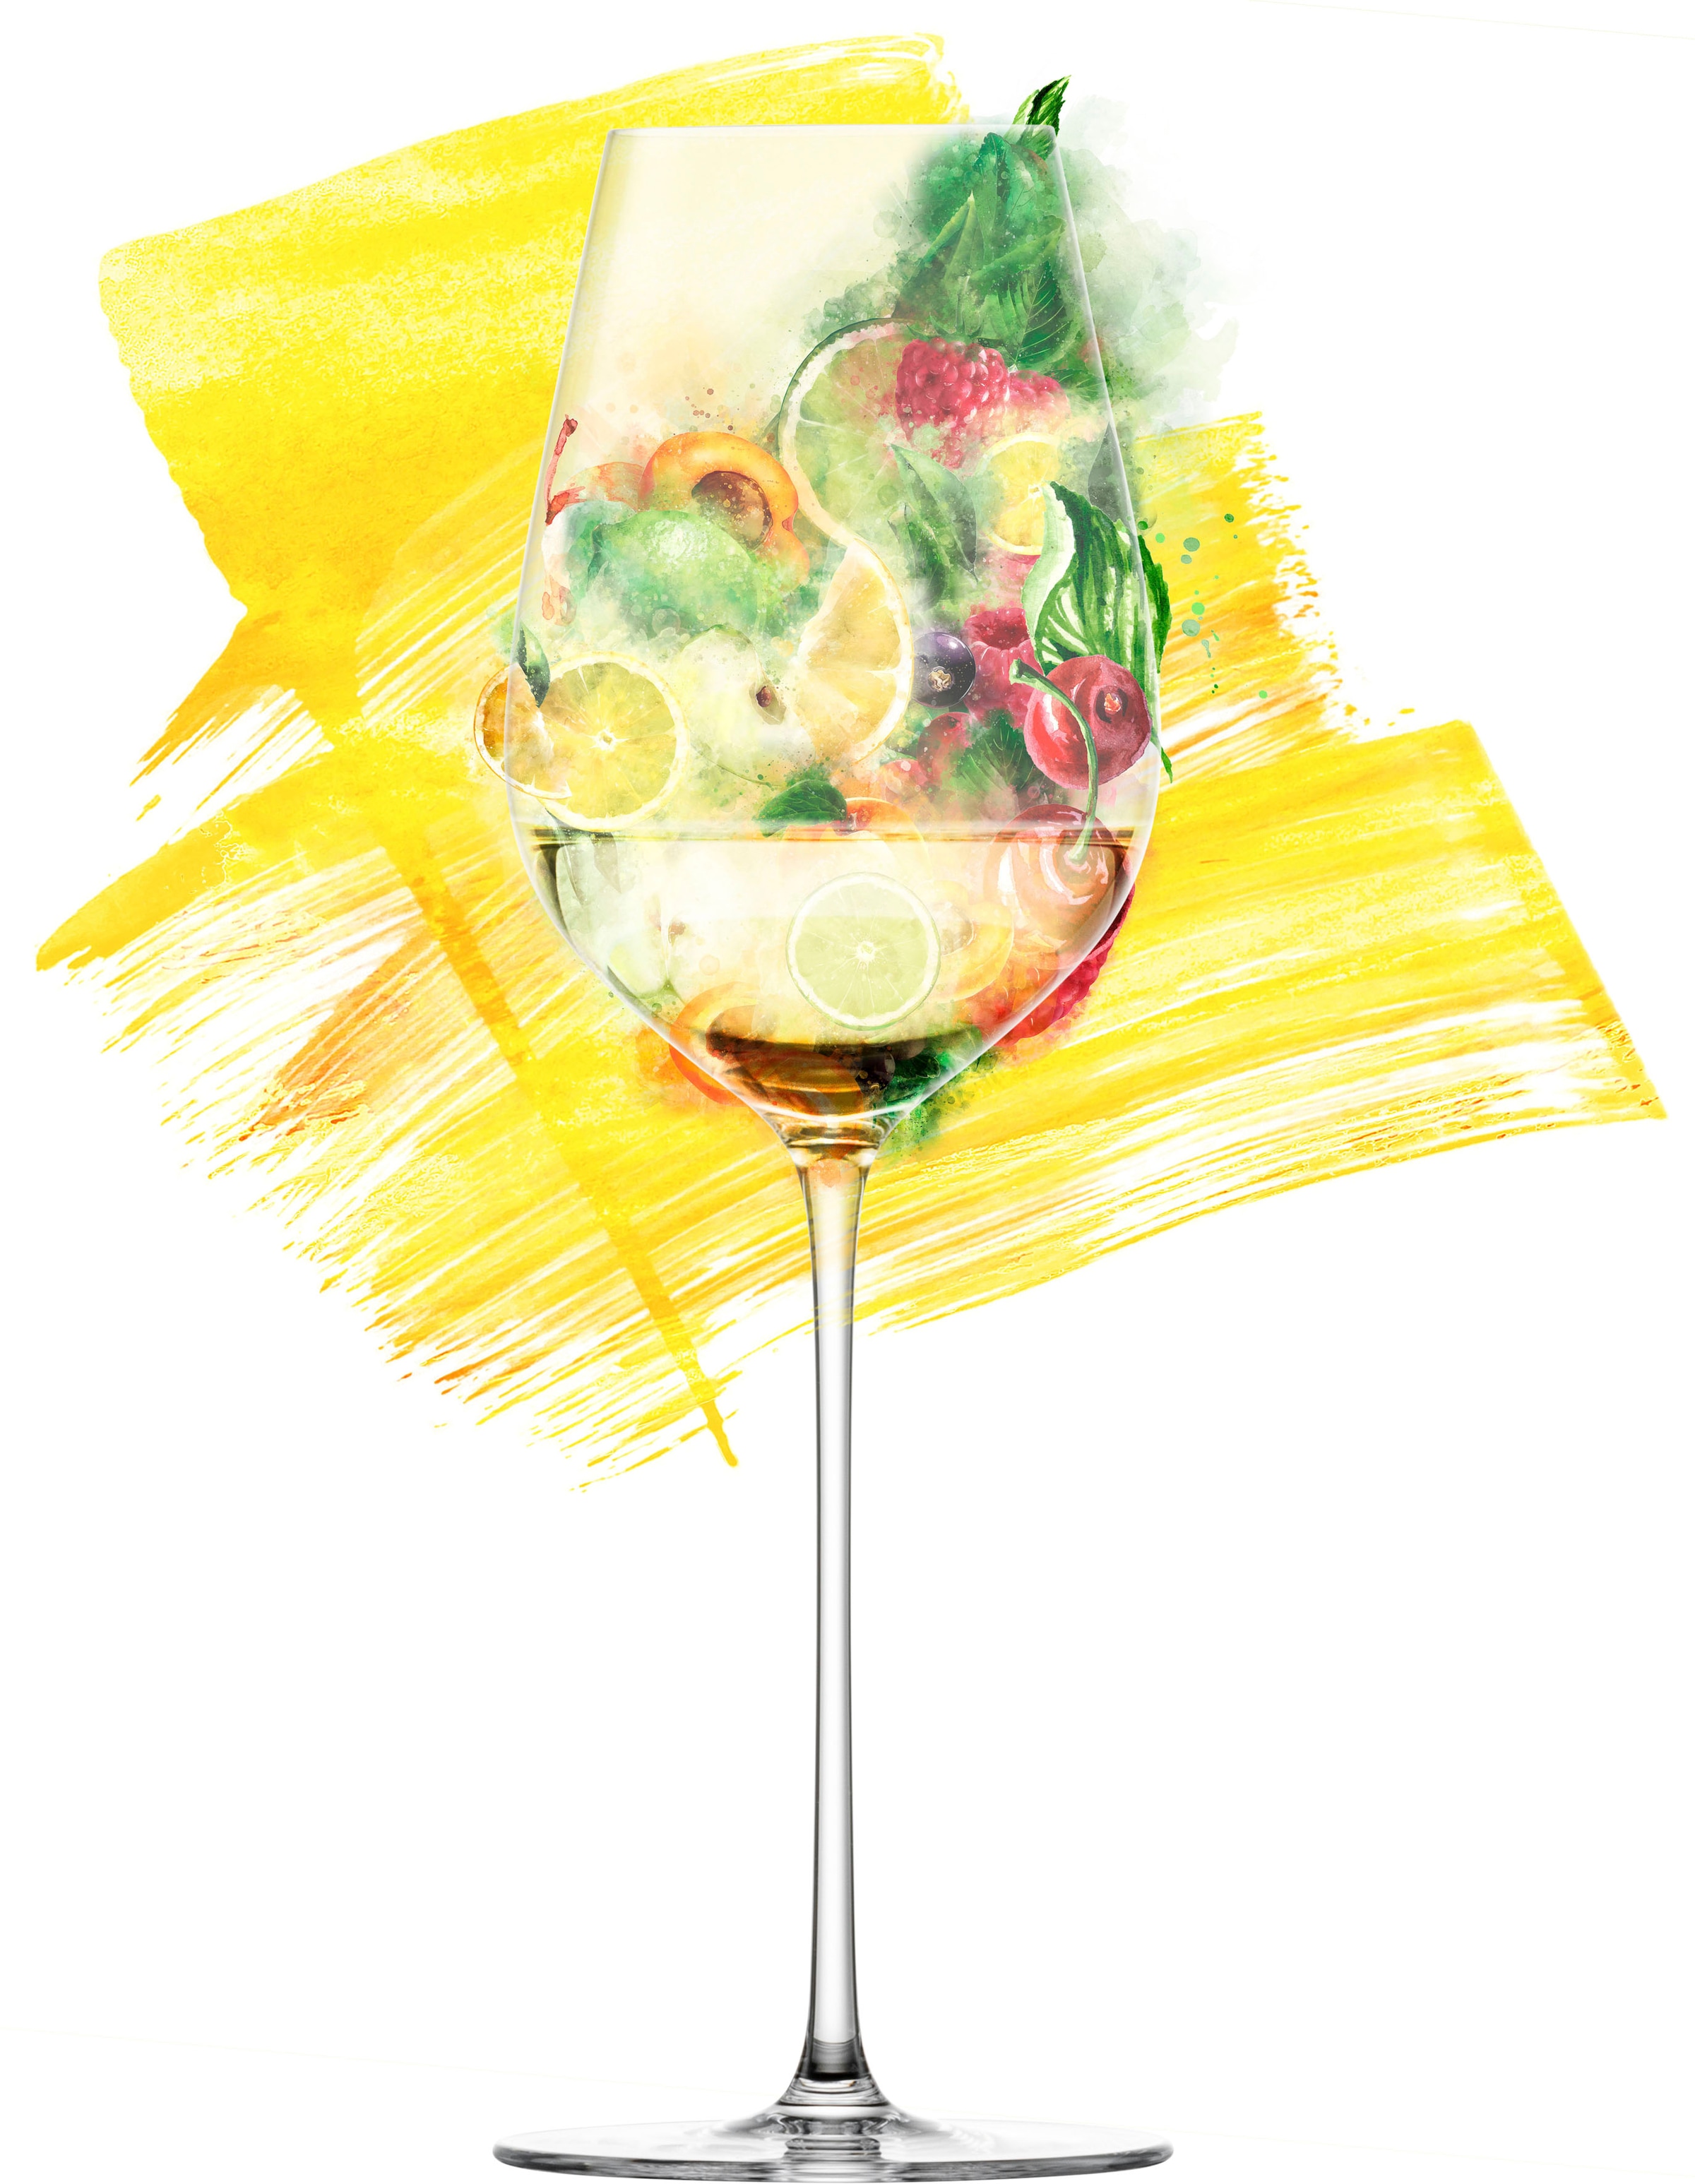 Eisch Champagnerglas »ESSENCA SENSISPLUS«, (Set, 2 tlg., 2 Gläser im Geschenkkarton), Allroundglas, 2-teilig, 400 ml, Made in Germany